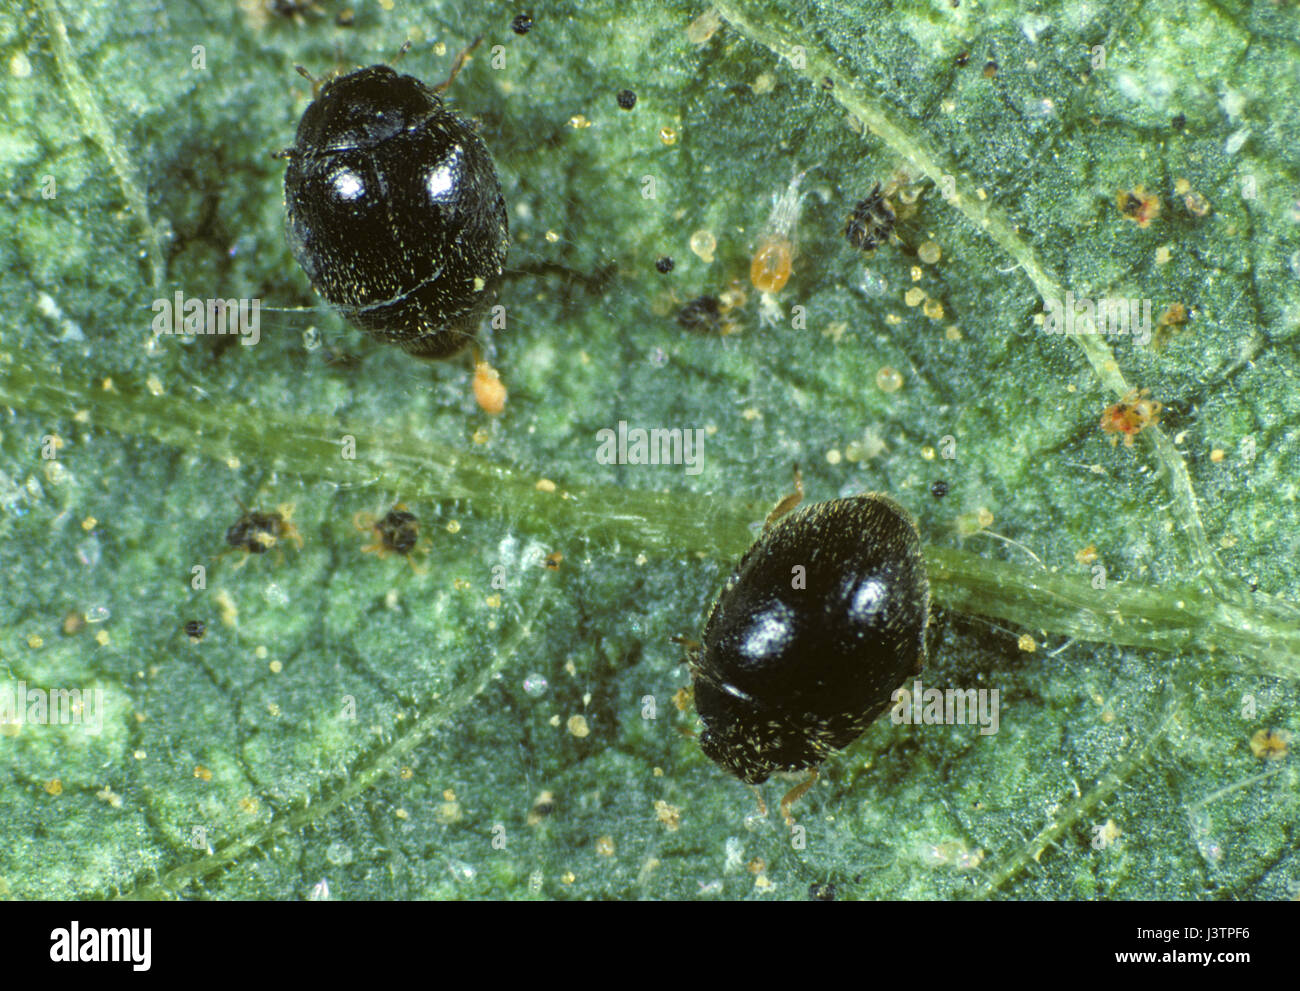 Minute schwarz Marienkäfer, Stethorus Punctillium, eine kleine biologische Schädlingsbekämpfung Insekt Jagd auf zwei-spotted Spinnmilben Stockfoto